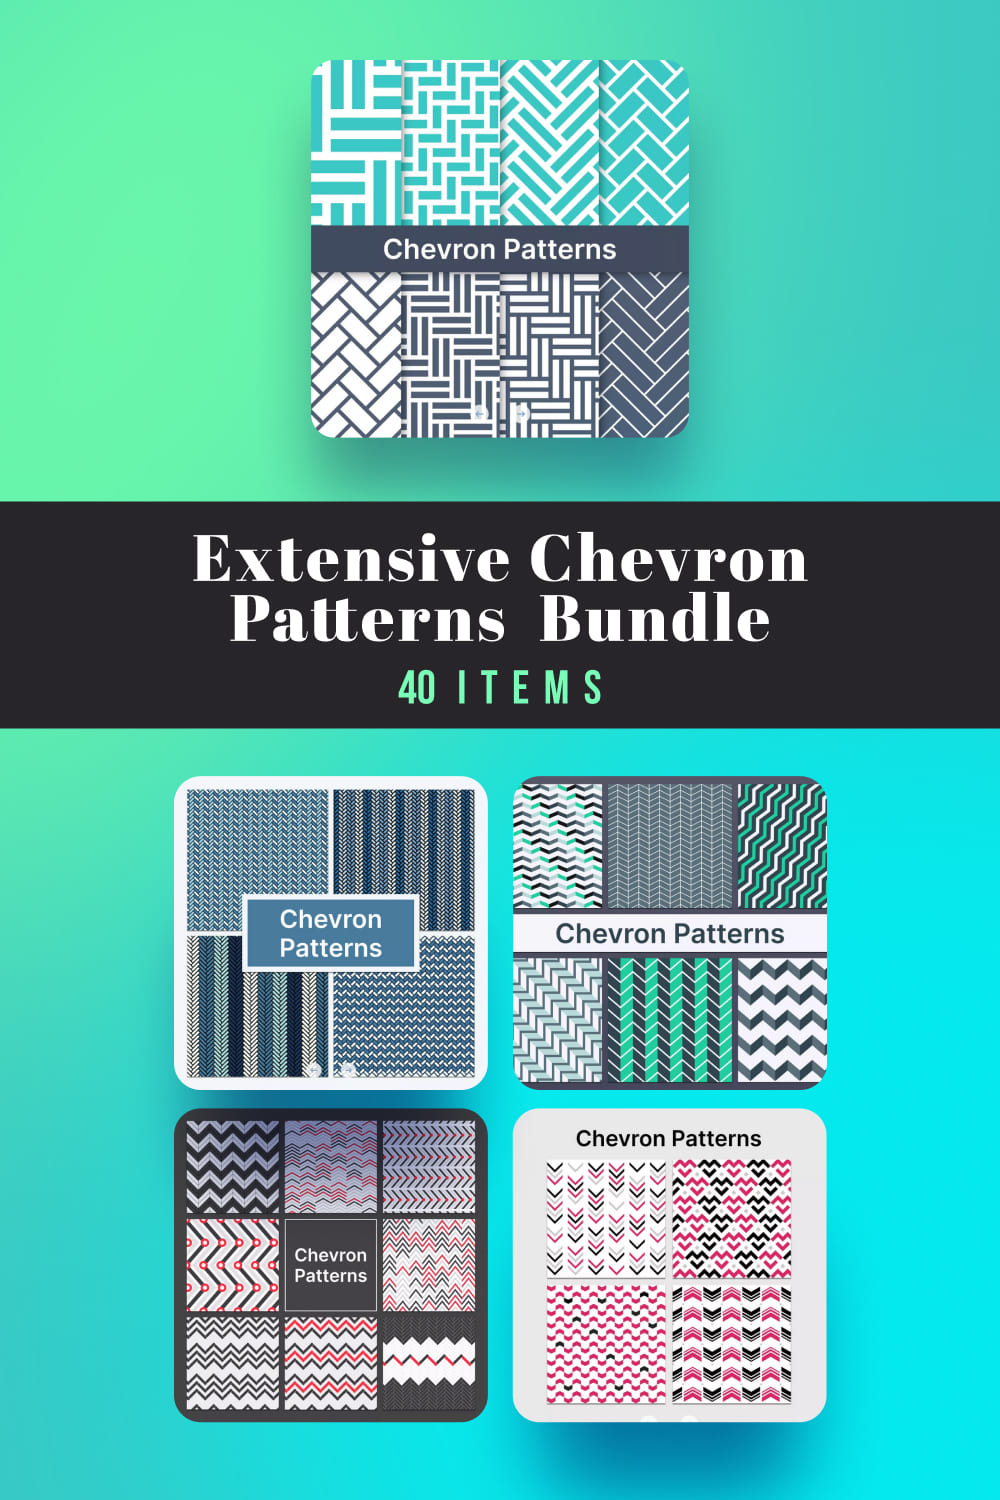 Extensive Chevron Patterns Bundle 40 Items Pinterest.